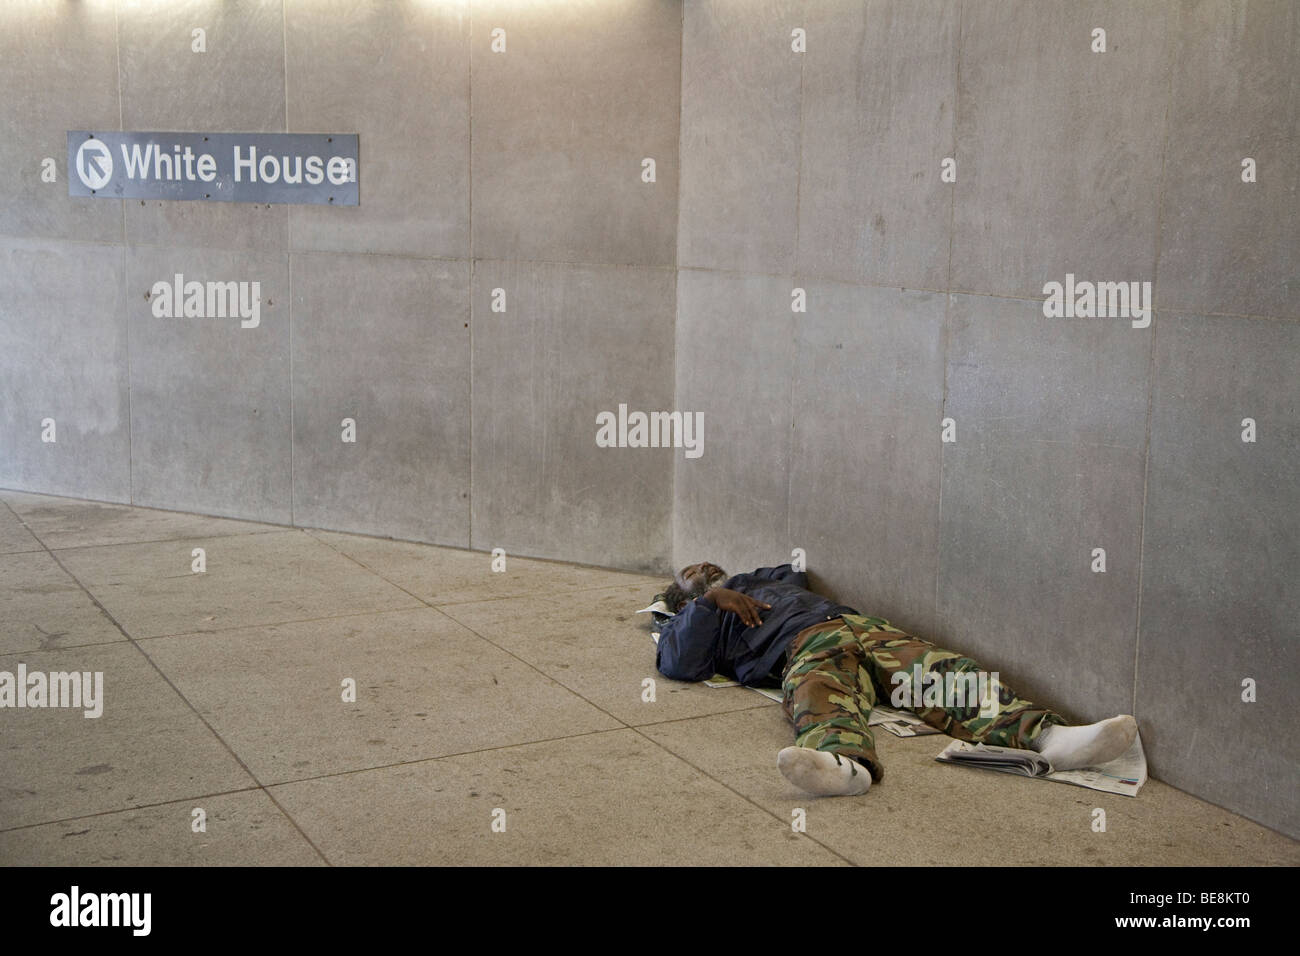 Washington, DC - un sans-abri dort à l'entrée d'une station de métro près de la Maison Blanche. Banque D'Images